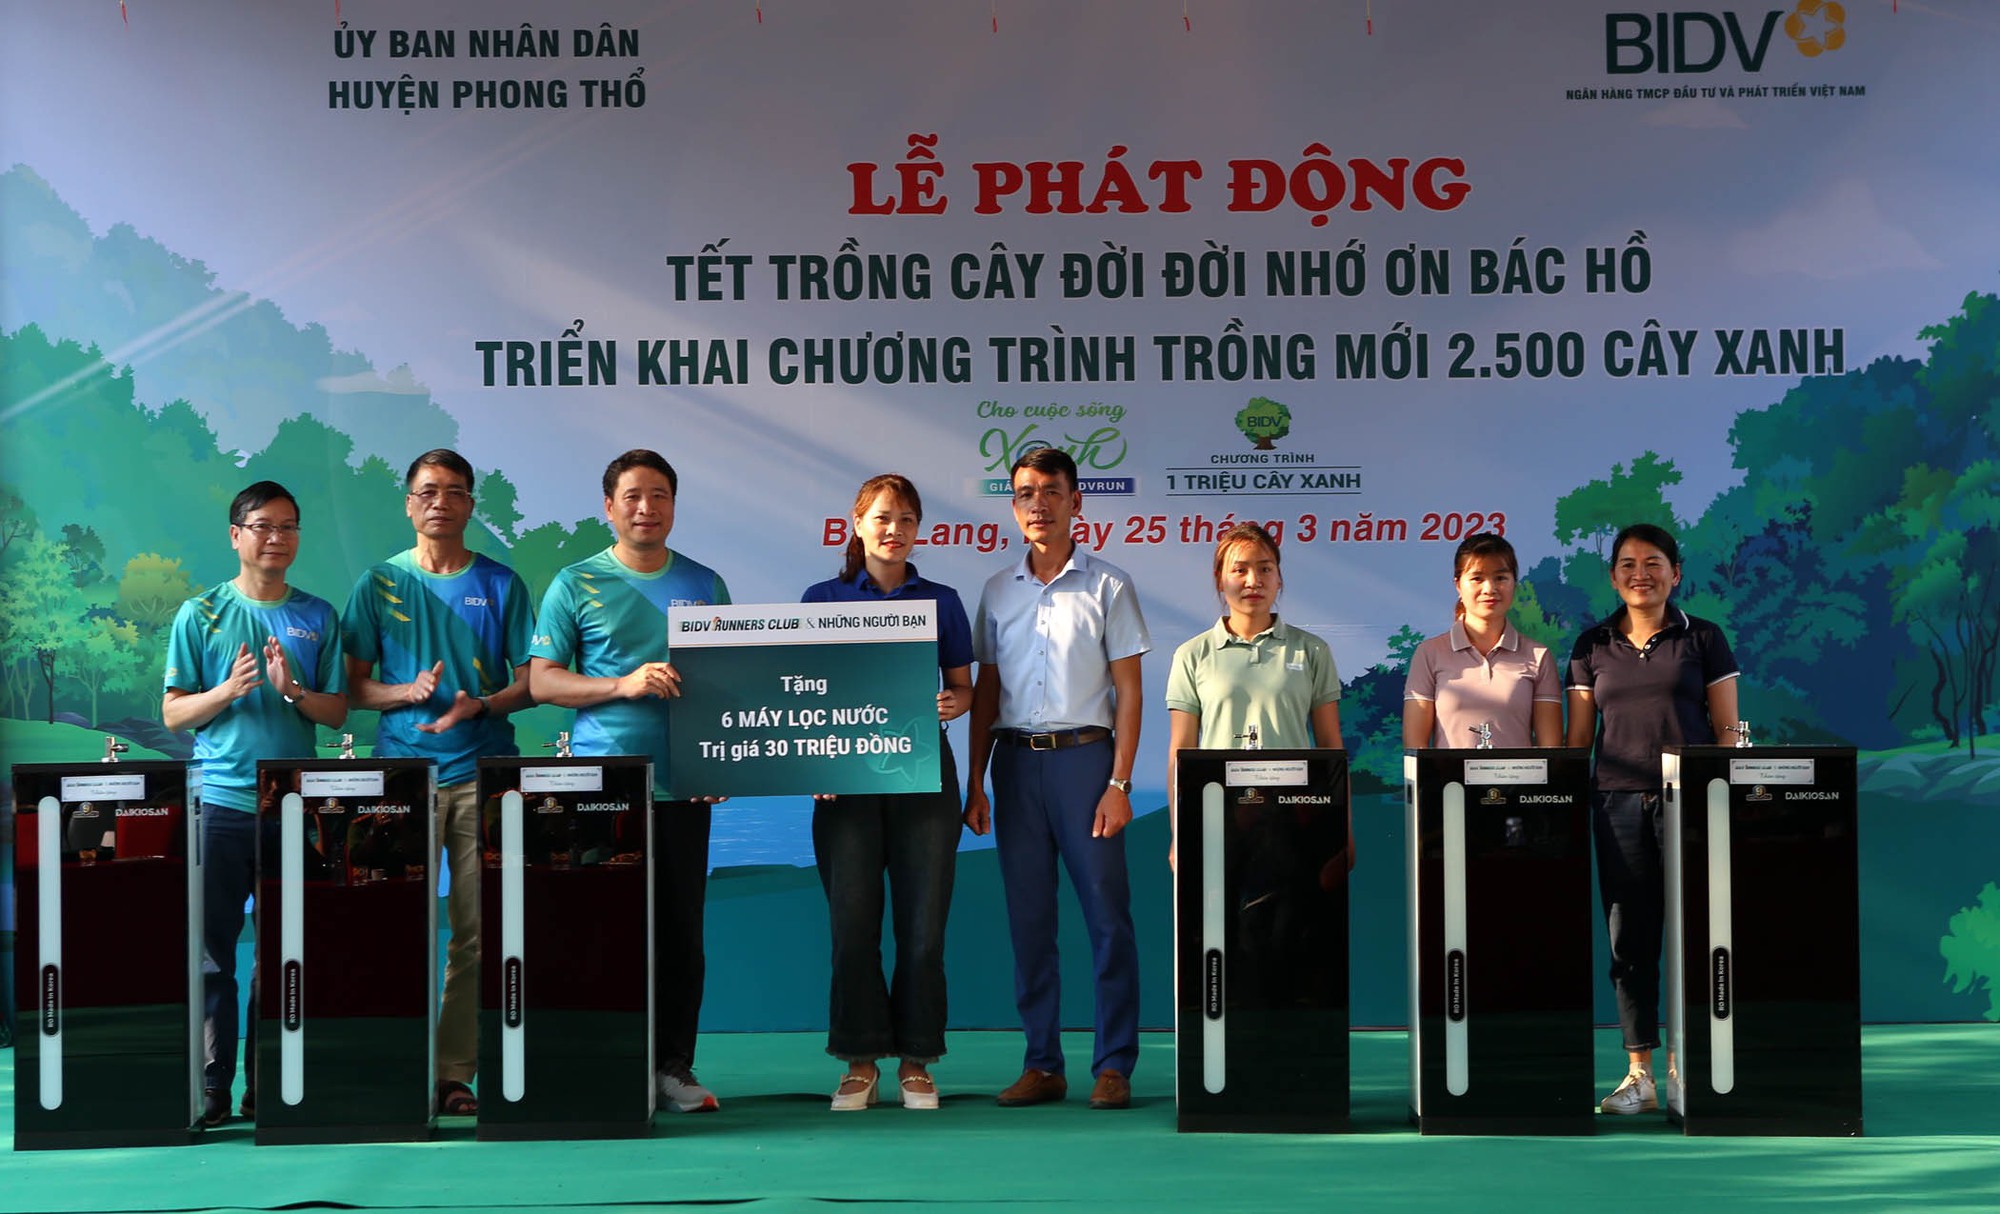 Chương trình “1 triệu cây xanh”:  BIDV trồng 2.500 cây xanh tại Lai Châu - Ảnh 2.